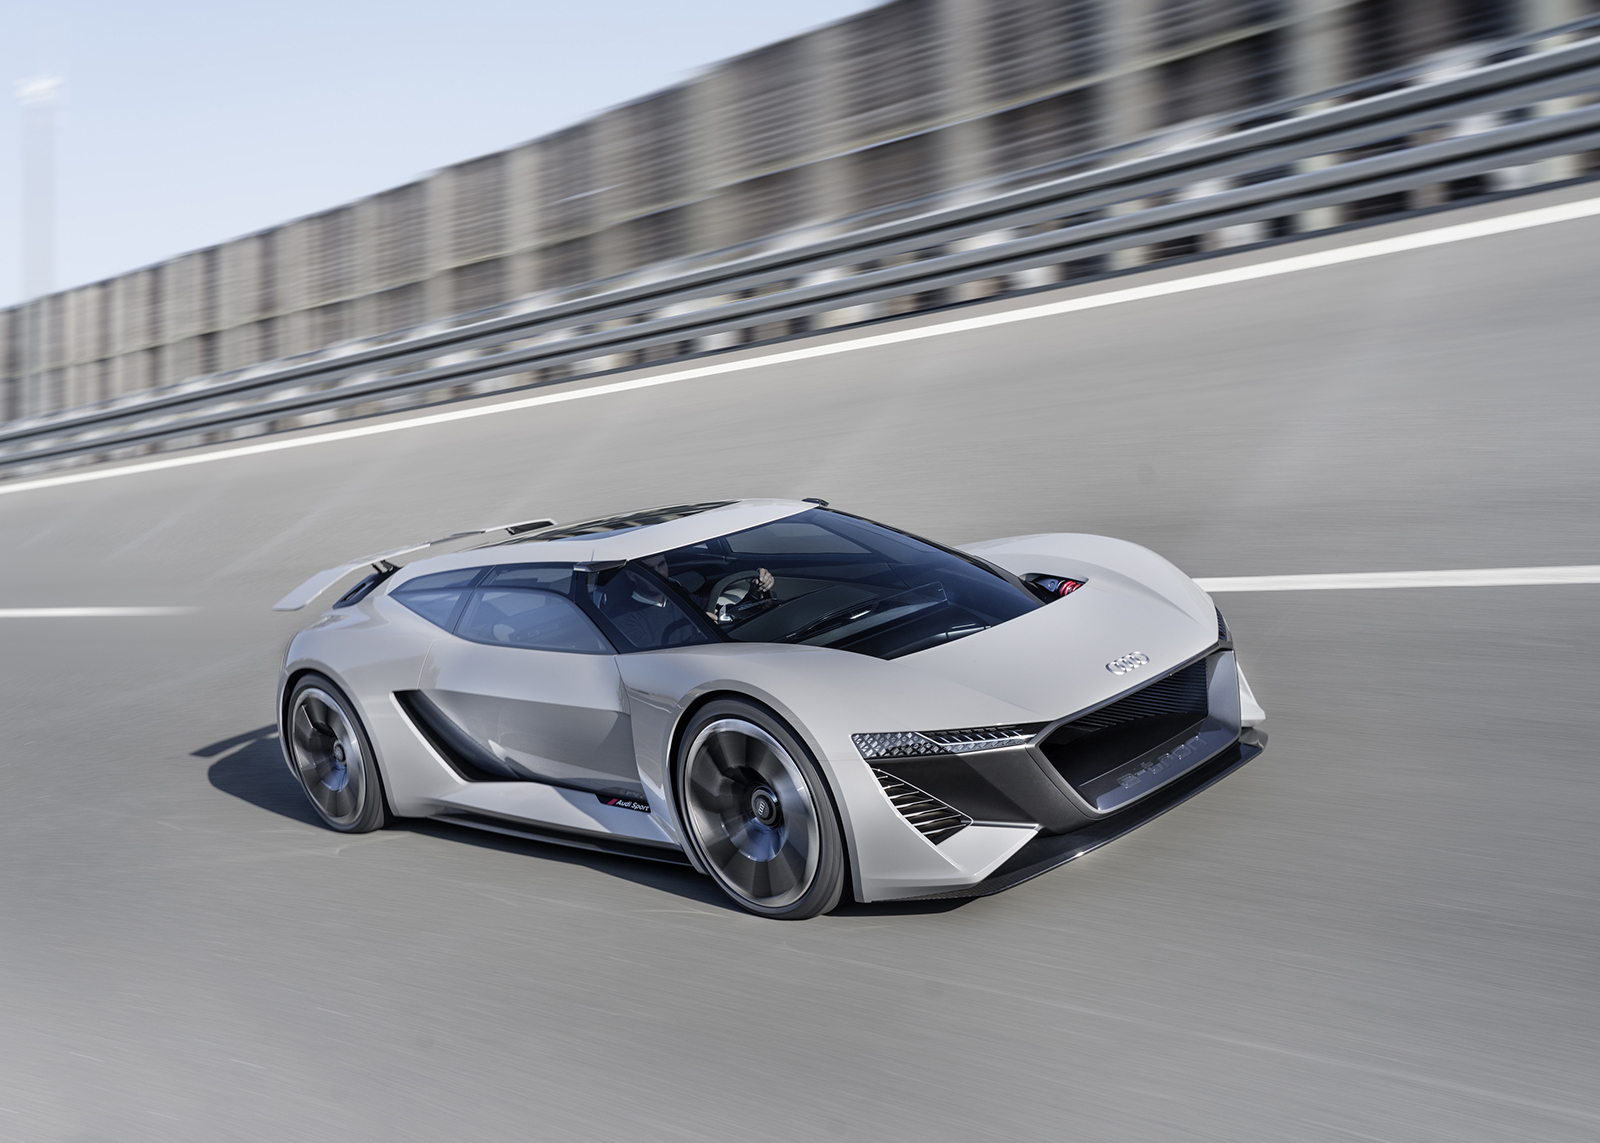 官方新聞稿。Audi PB 18 etron 純電概念超跑 顛覆未來純電競速想像 2018美國圓石灘車展全球正式發表 SUPERMOTO8